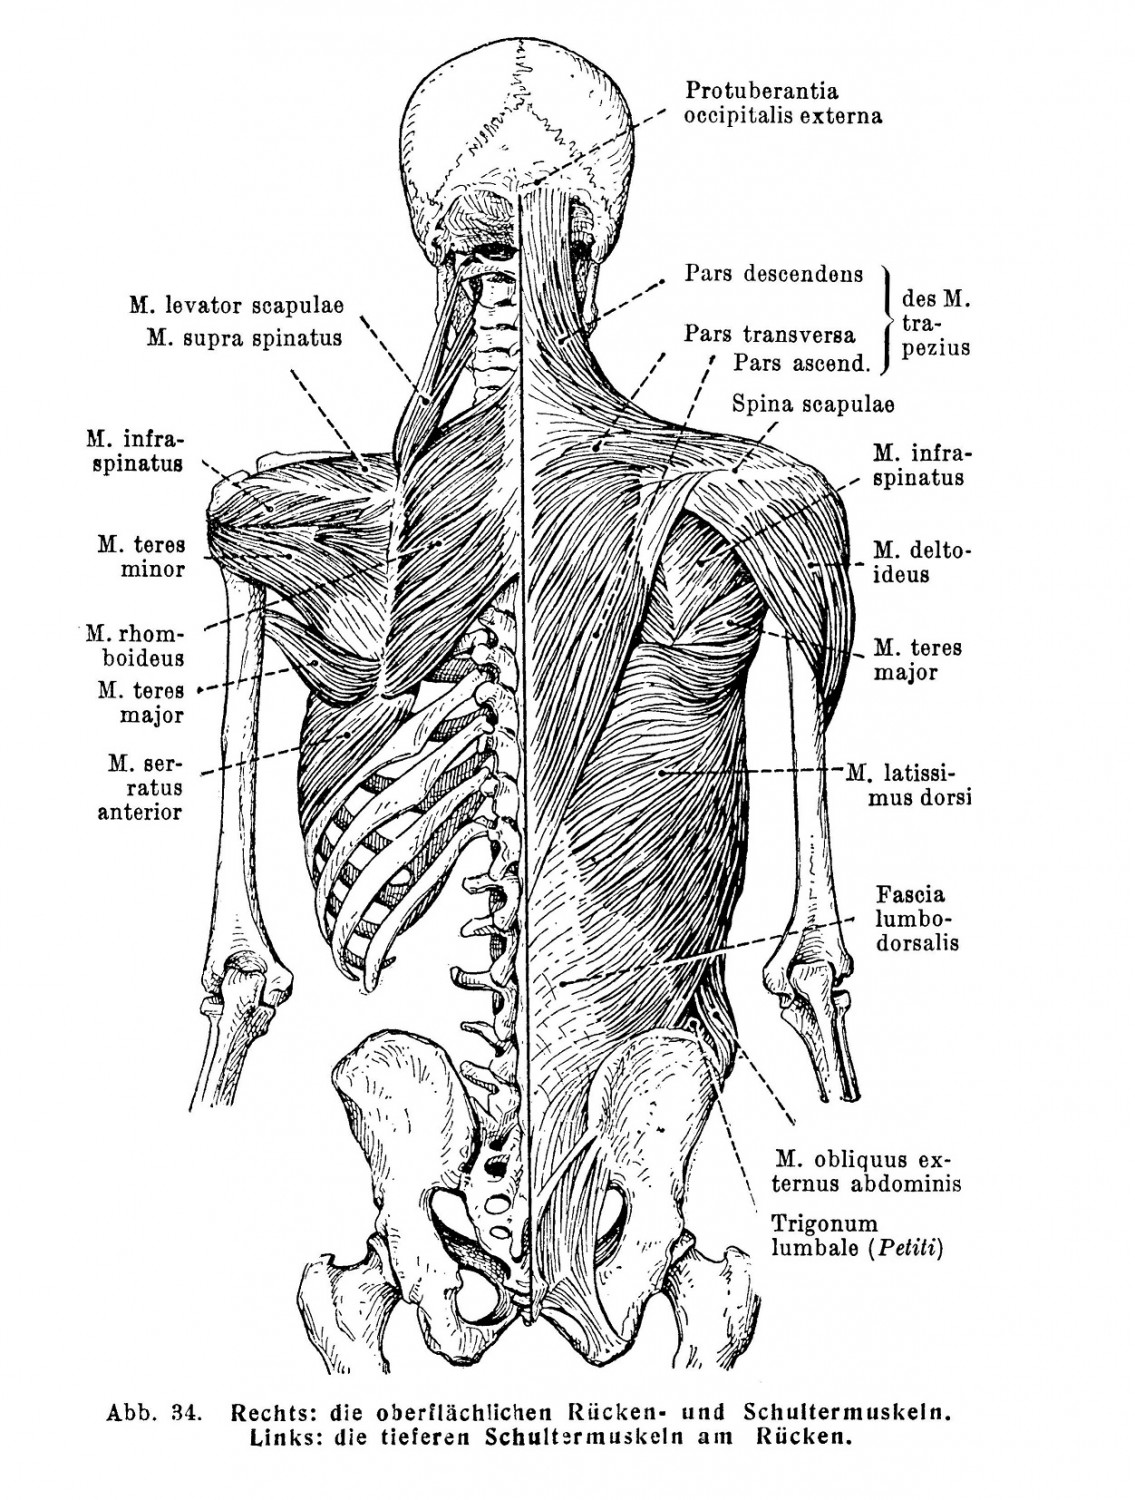 Im Knie treffen Femur und Tibia so zusammen, daß sie einen nach außen offenen Winkel von durchschnittlich 174° bilden: sogenanntes physiologisches Genu valgum.